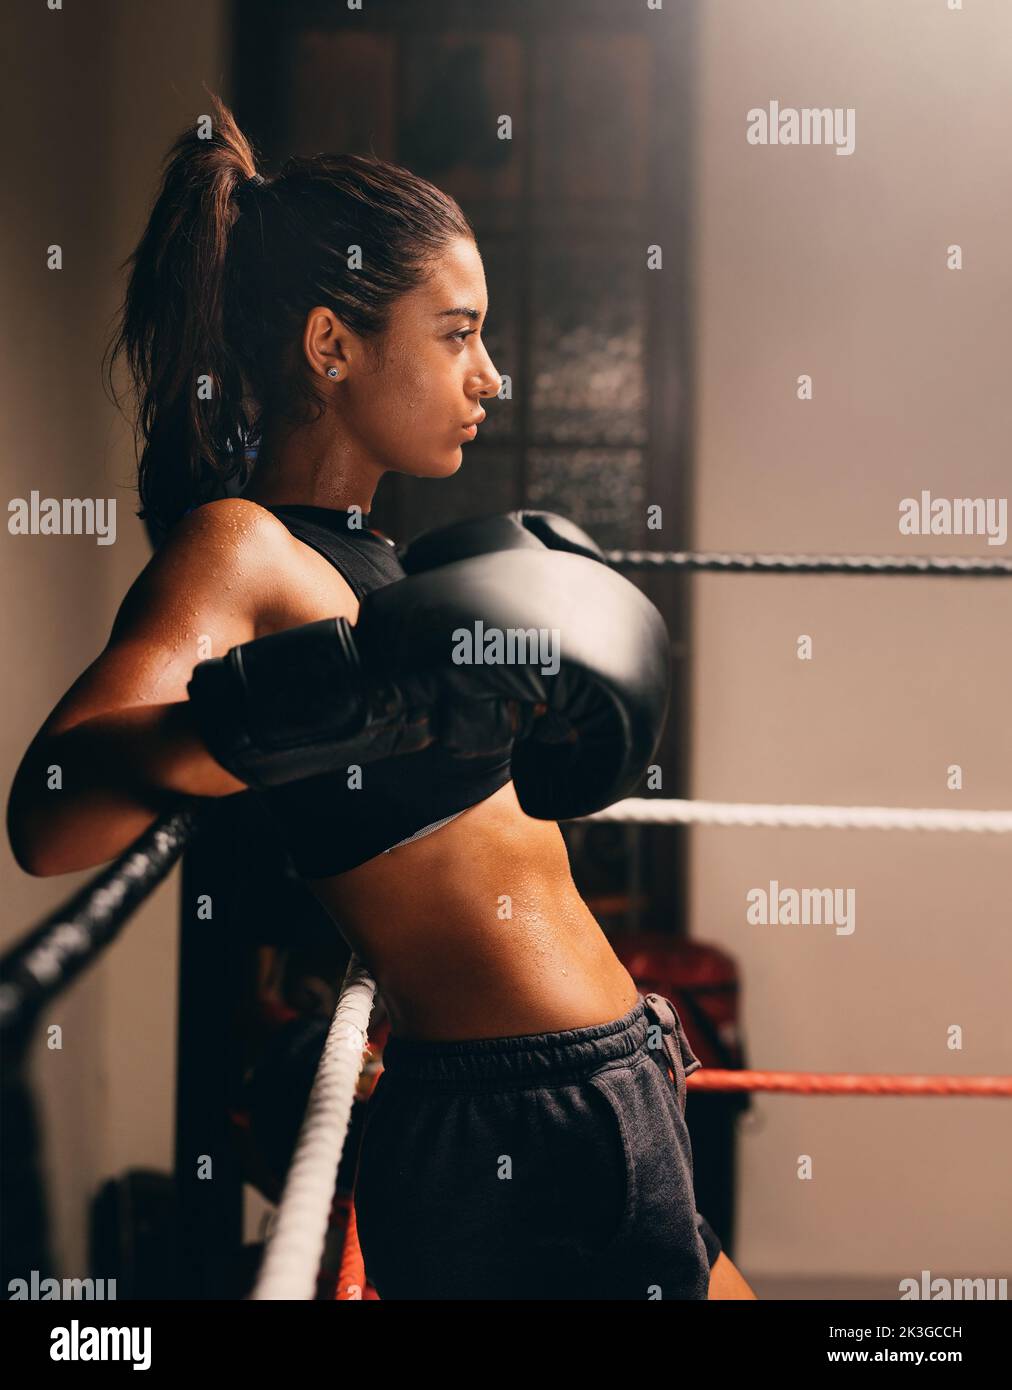 Pugile femminile muscoloso appoggiato alle corde in un anello di pugilato. Atleta fidata che si prepara per una partita di boxe. Foto Stock